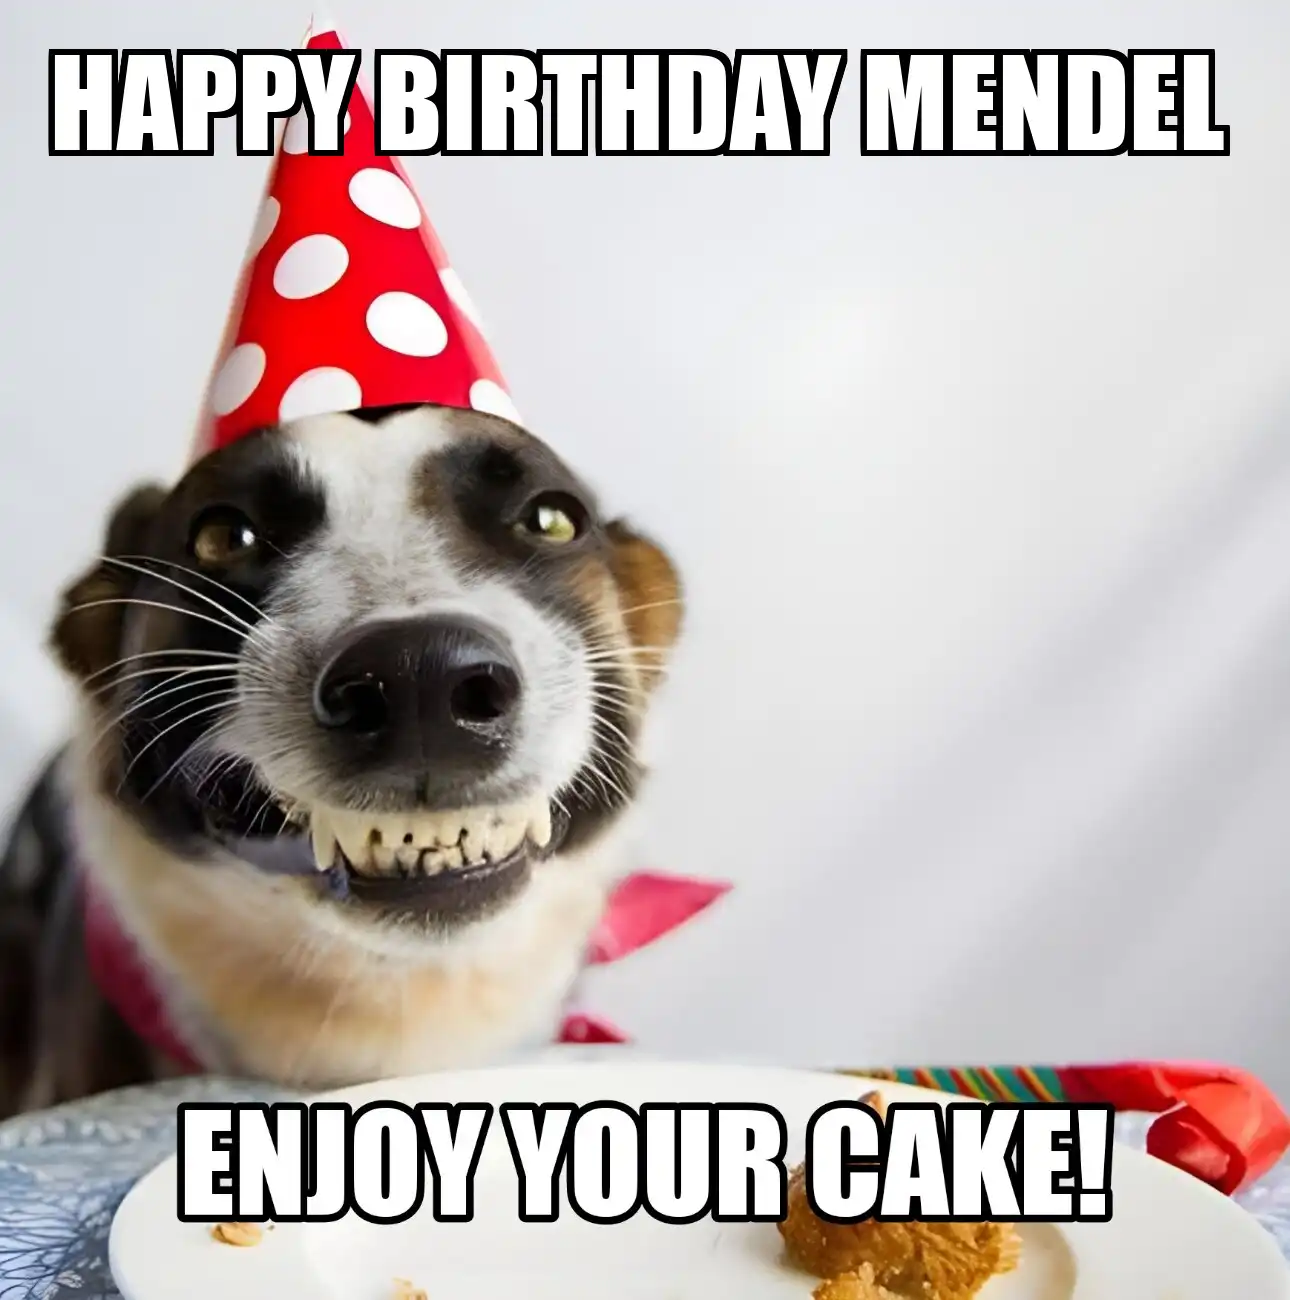 Happy Birthday Mendel Enjoy Your Cake Dog Meme